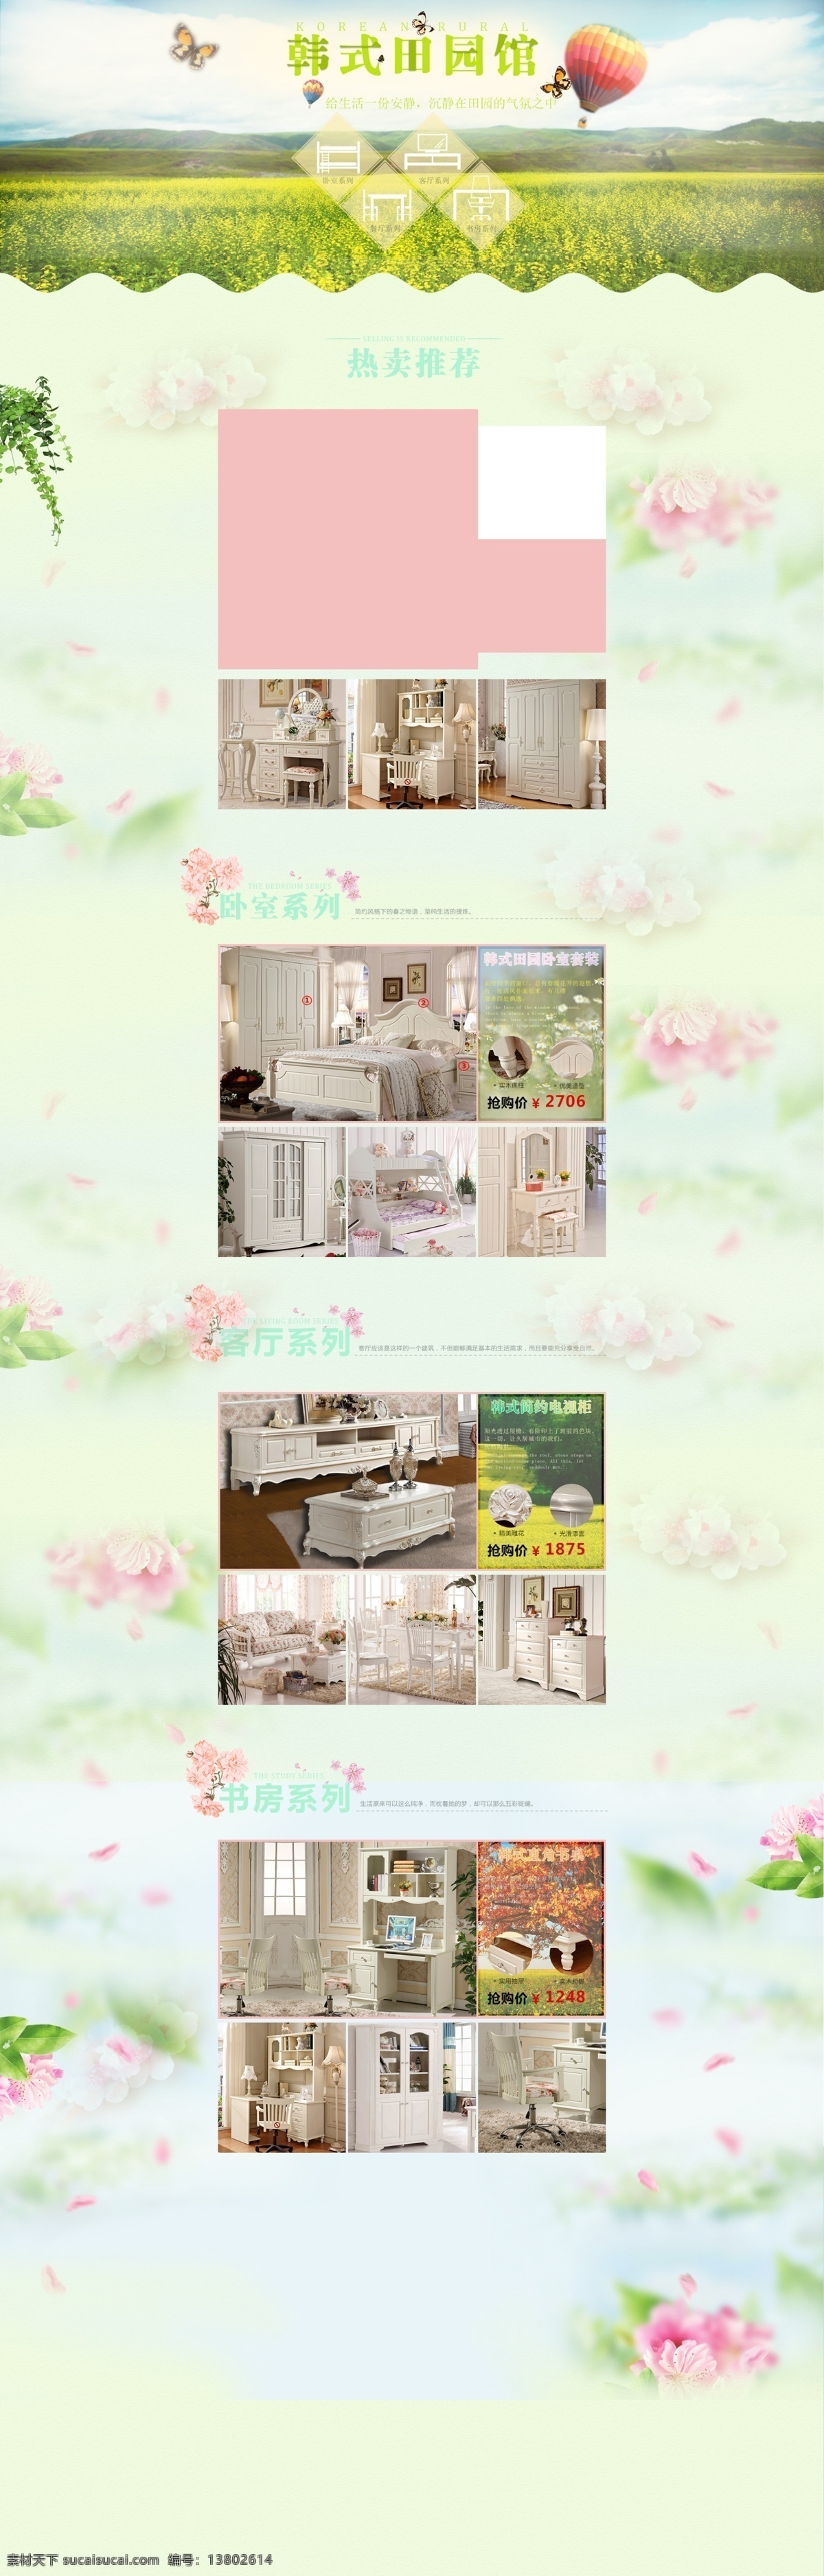 韩式 田园 家居 淘宝 模板 模版 沙发 淘宝首页模板 风格 页面